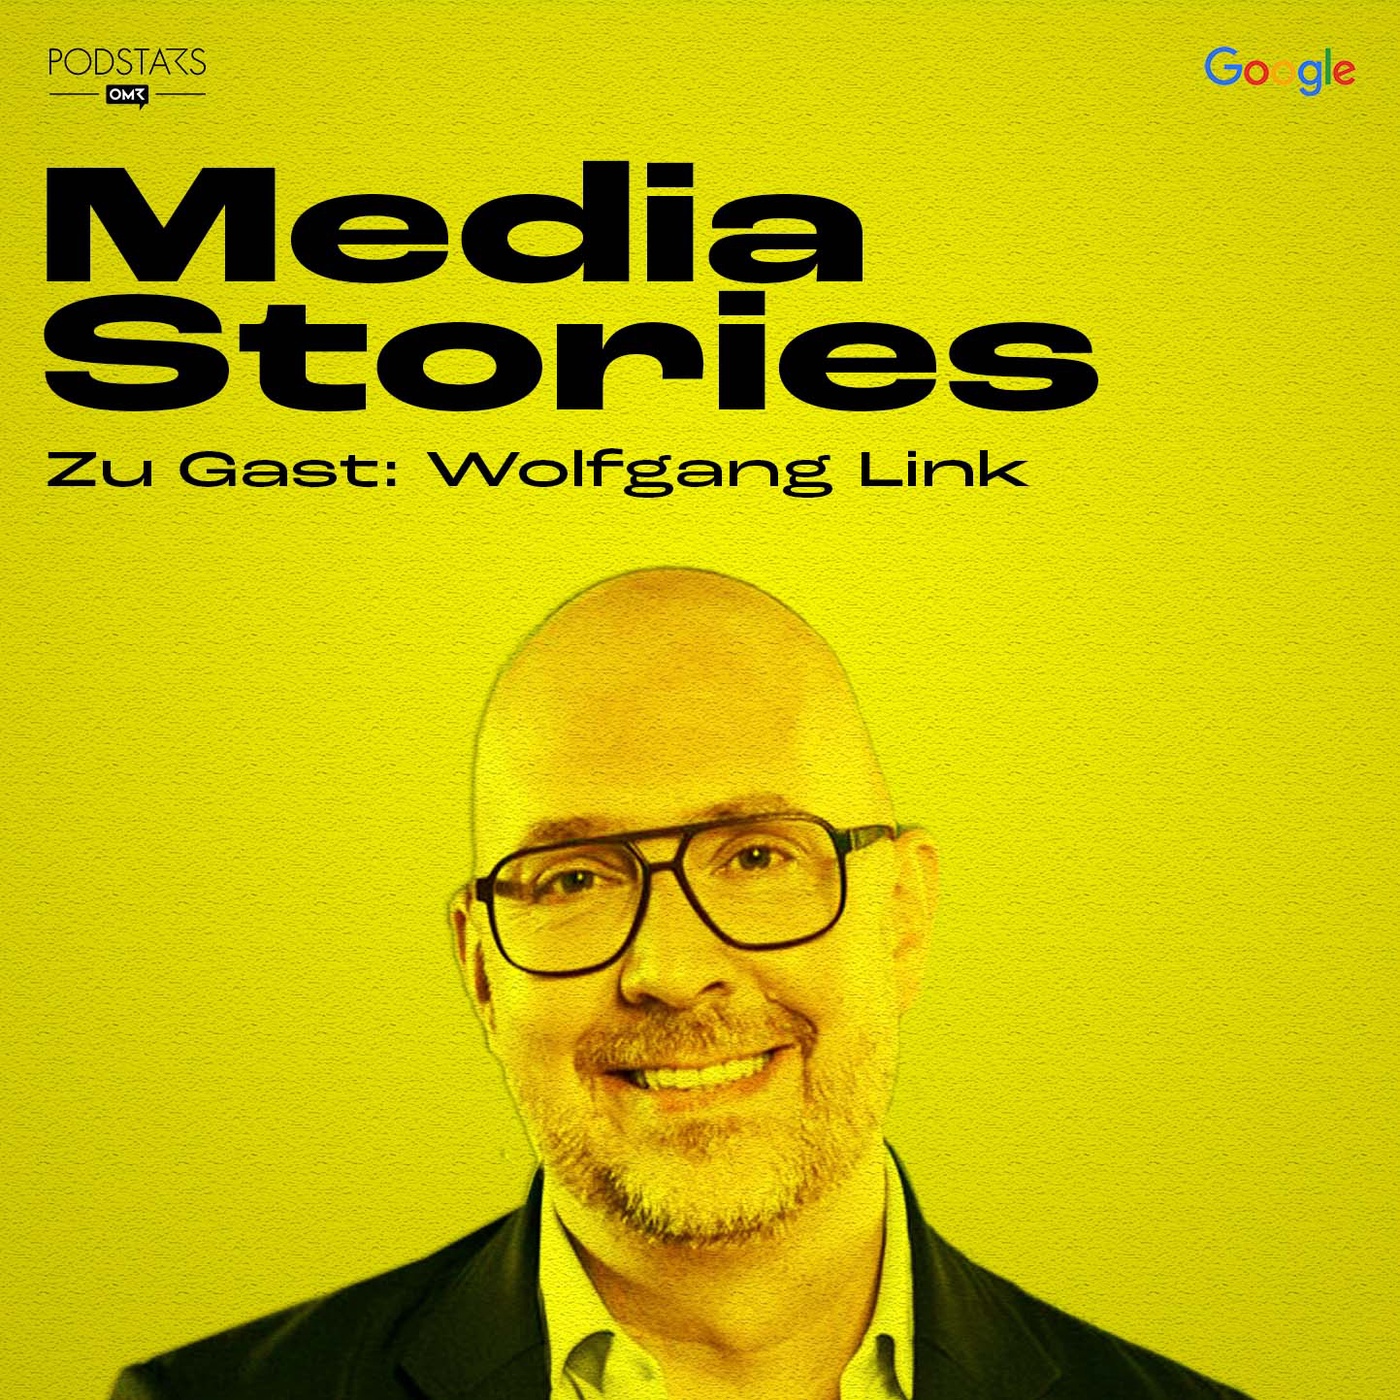 Wie Wolfgang Link bei ProSiebenSat.1 mit Entertainment die Welt bewegen will